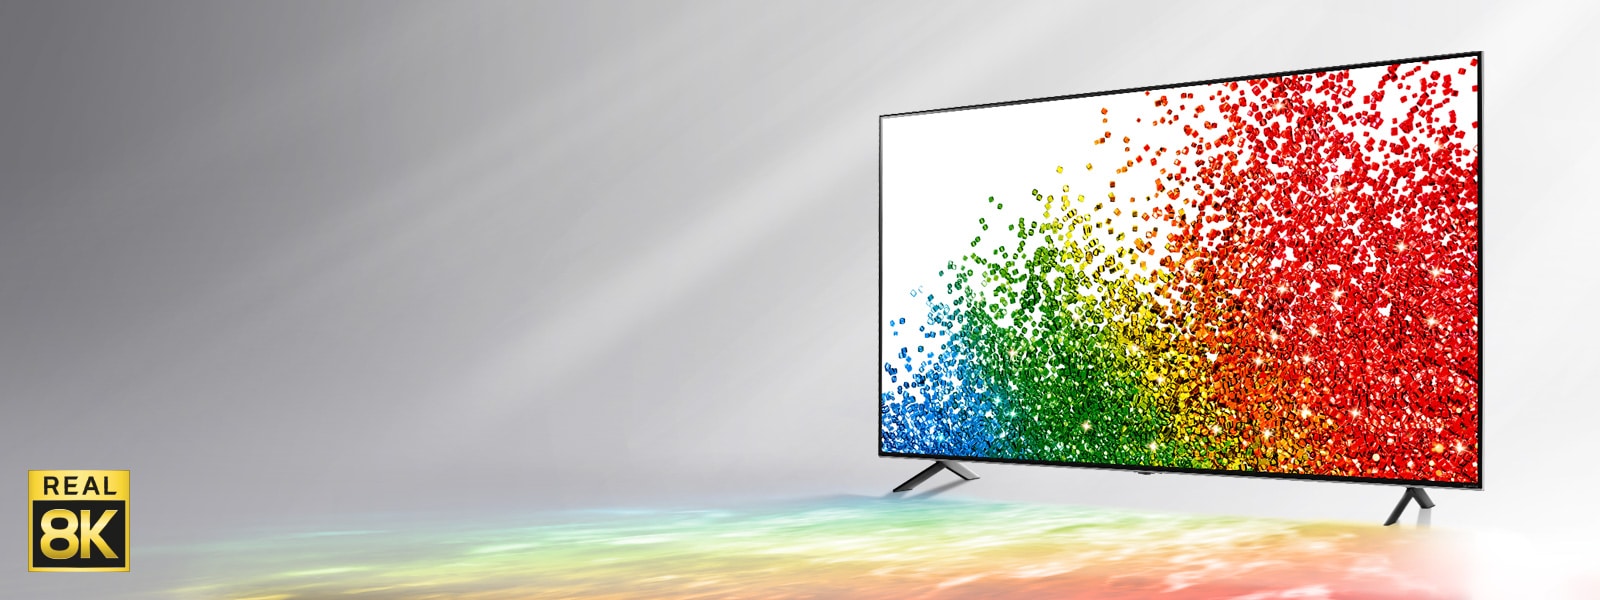 Pateikiamas vaizdas, kuriame pilkame fone matomas „LG NanoCell“ televizorius, kurio ekrano spalvos atsispindi ant žemės priešais jį.